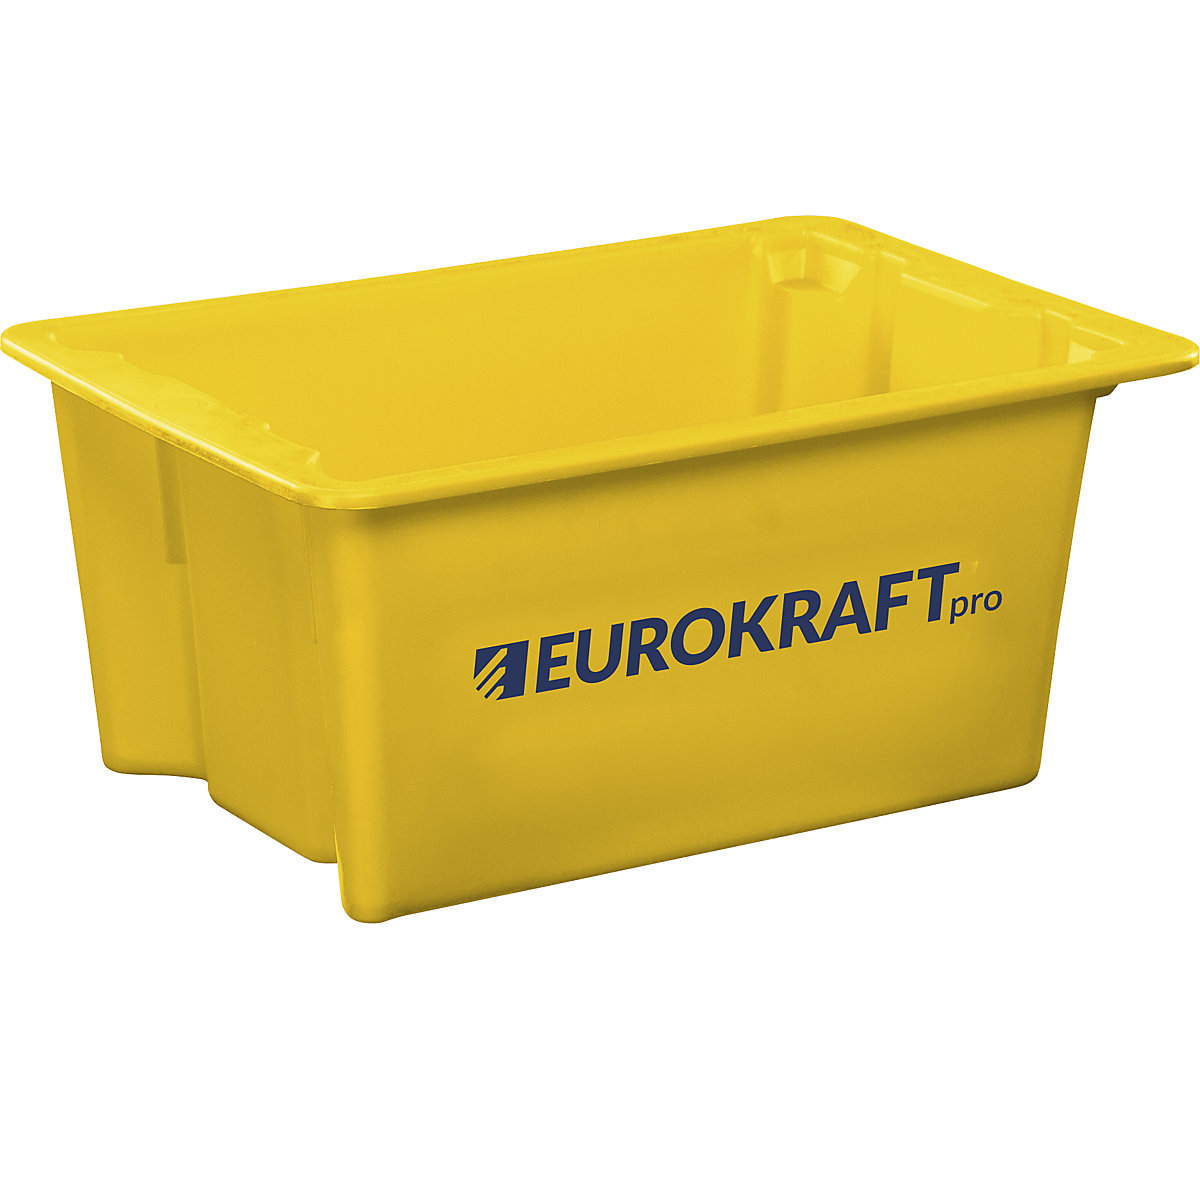 Zasučna posoda za zlaganje iz polipropilena, primernega za živila – eurokraft pro, prostornina 6 l, DE 4 kosi, stene in dno zaprti, rumena